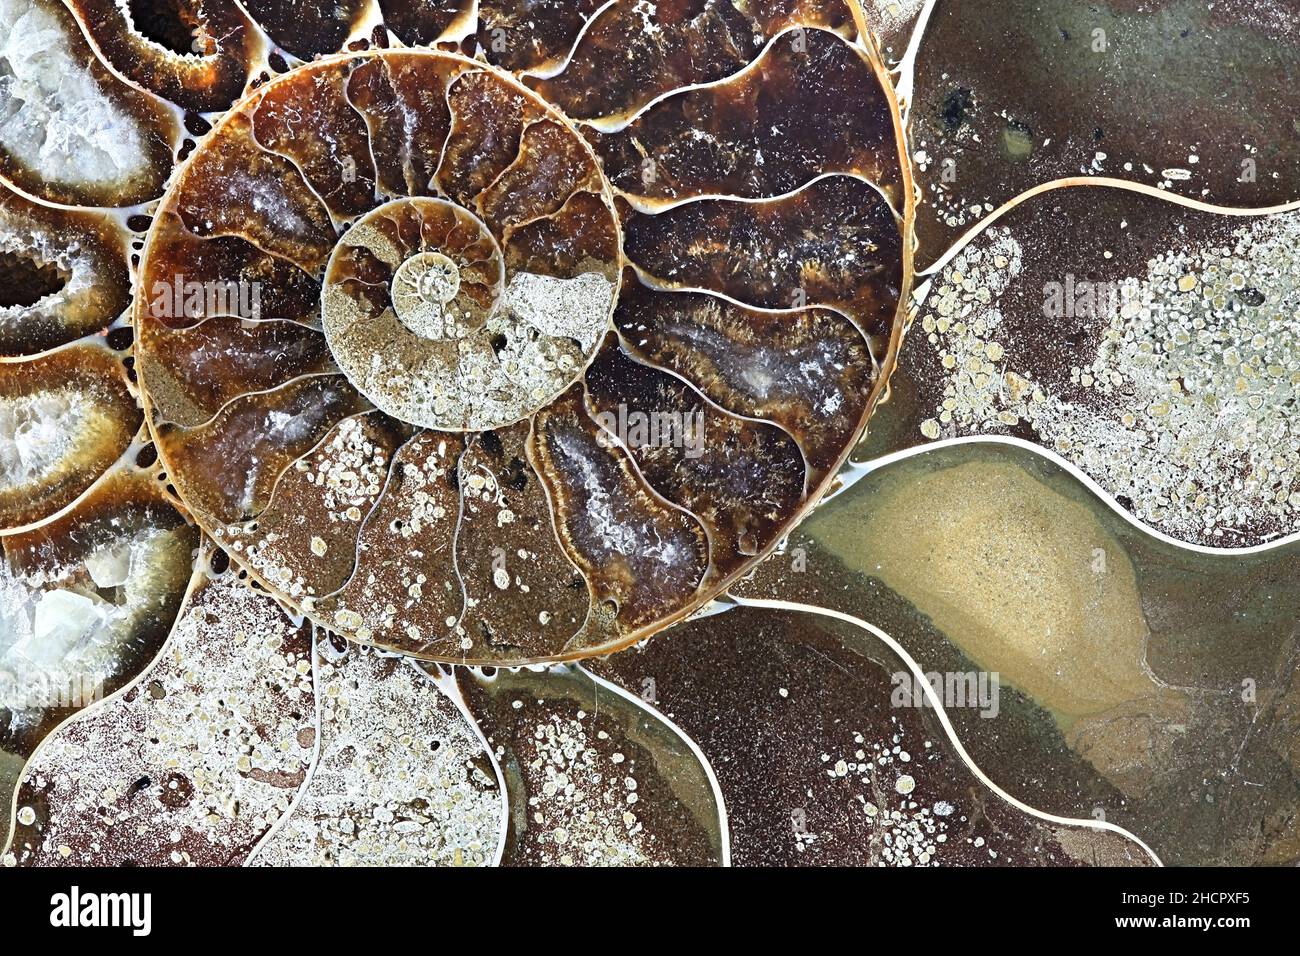 Il s'agit de mollusques fossiles préhistoriques appelé ammonite, une espèce d'animal marin. Banque D'Images